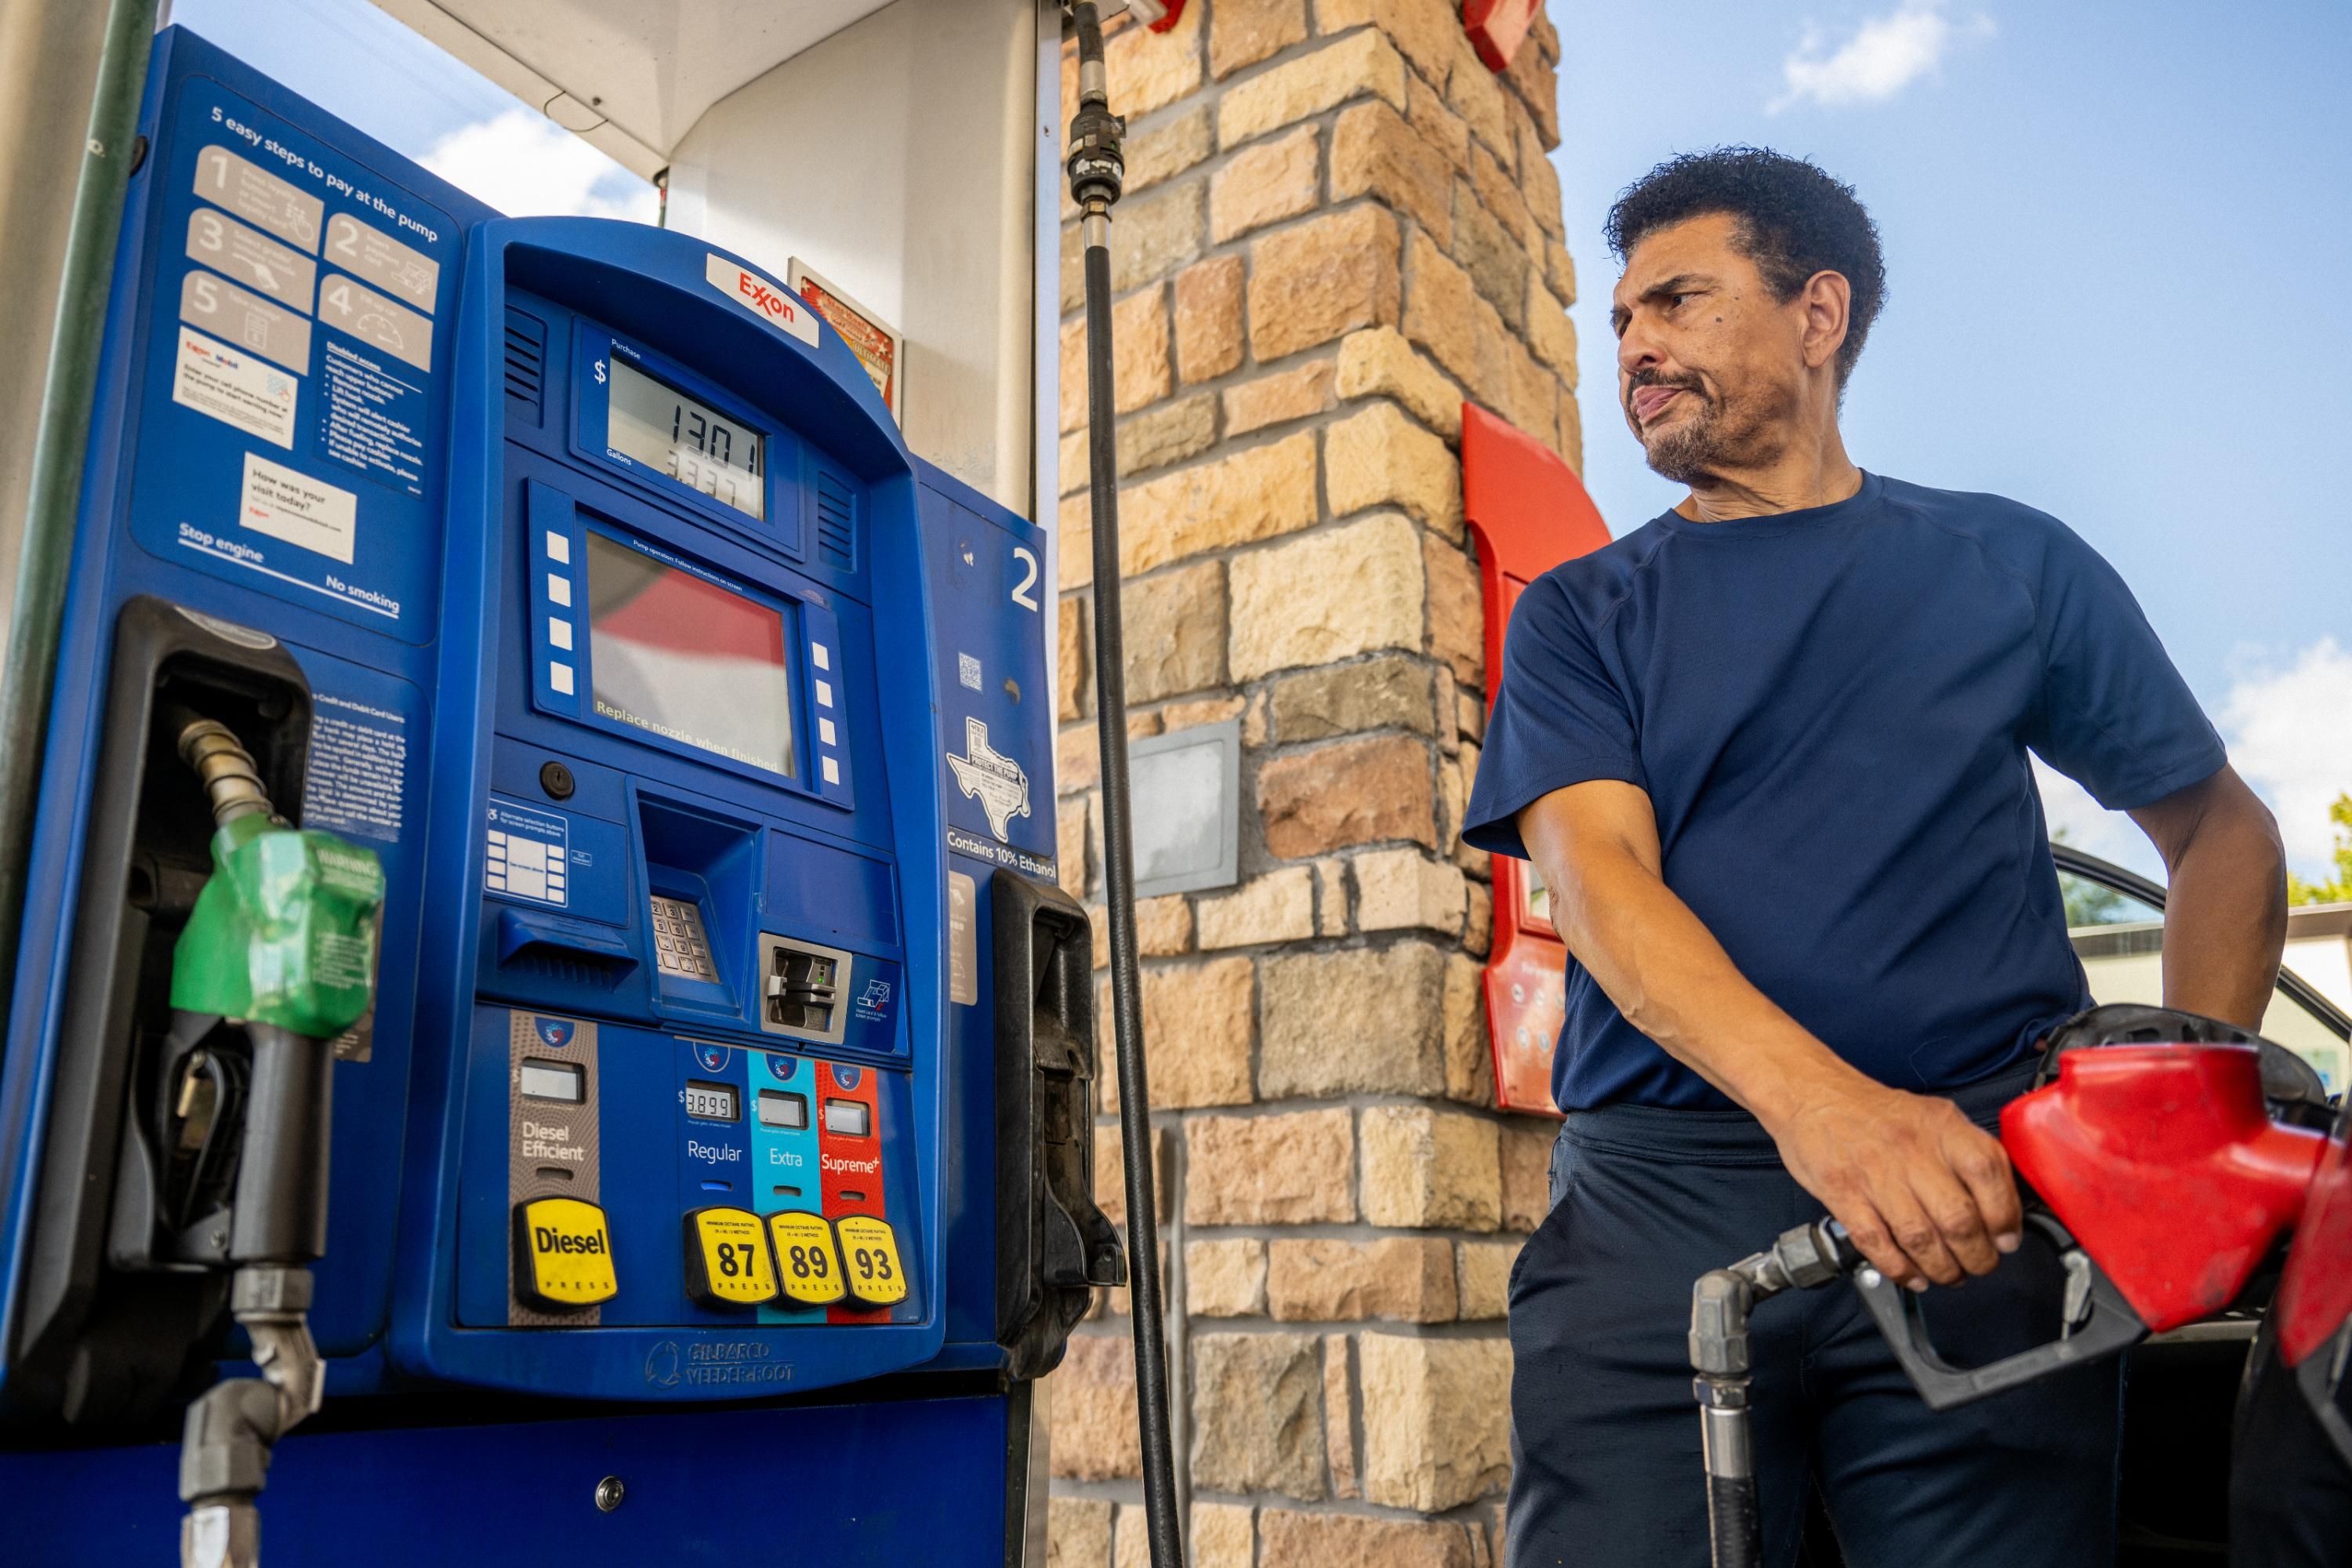 Man pumps gas at Exxon station